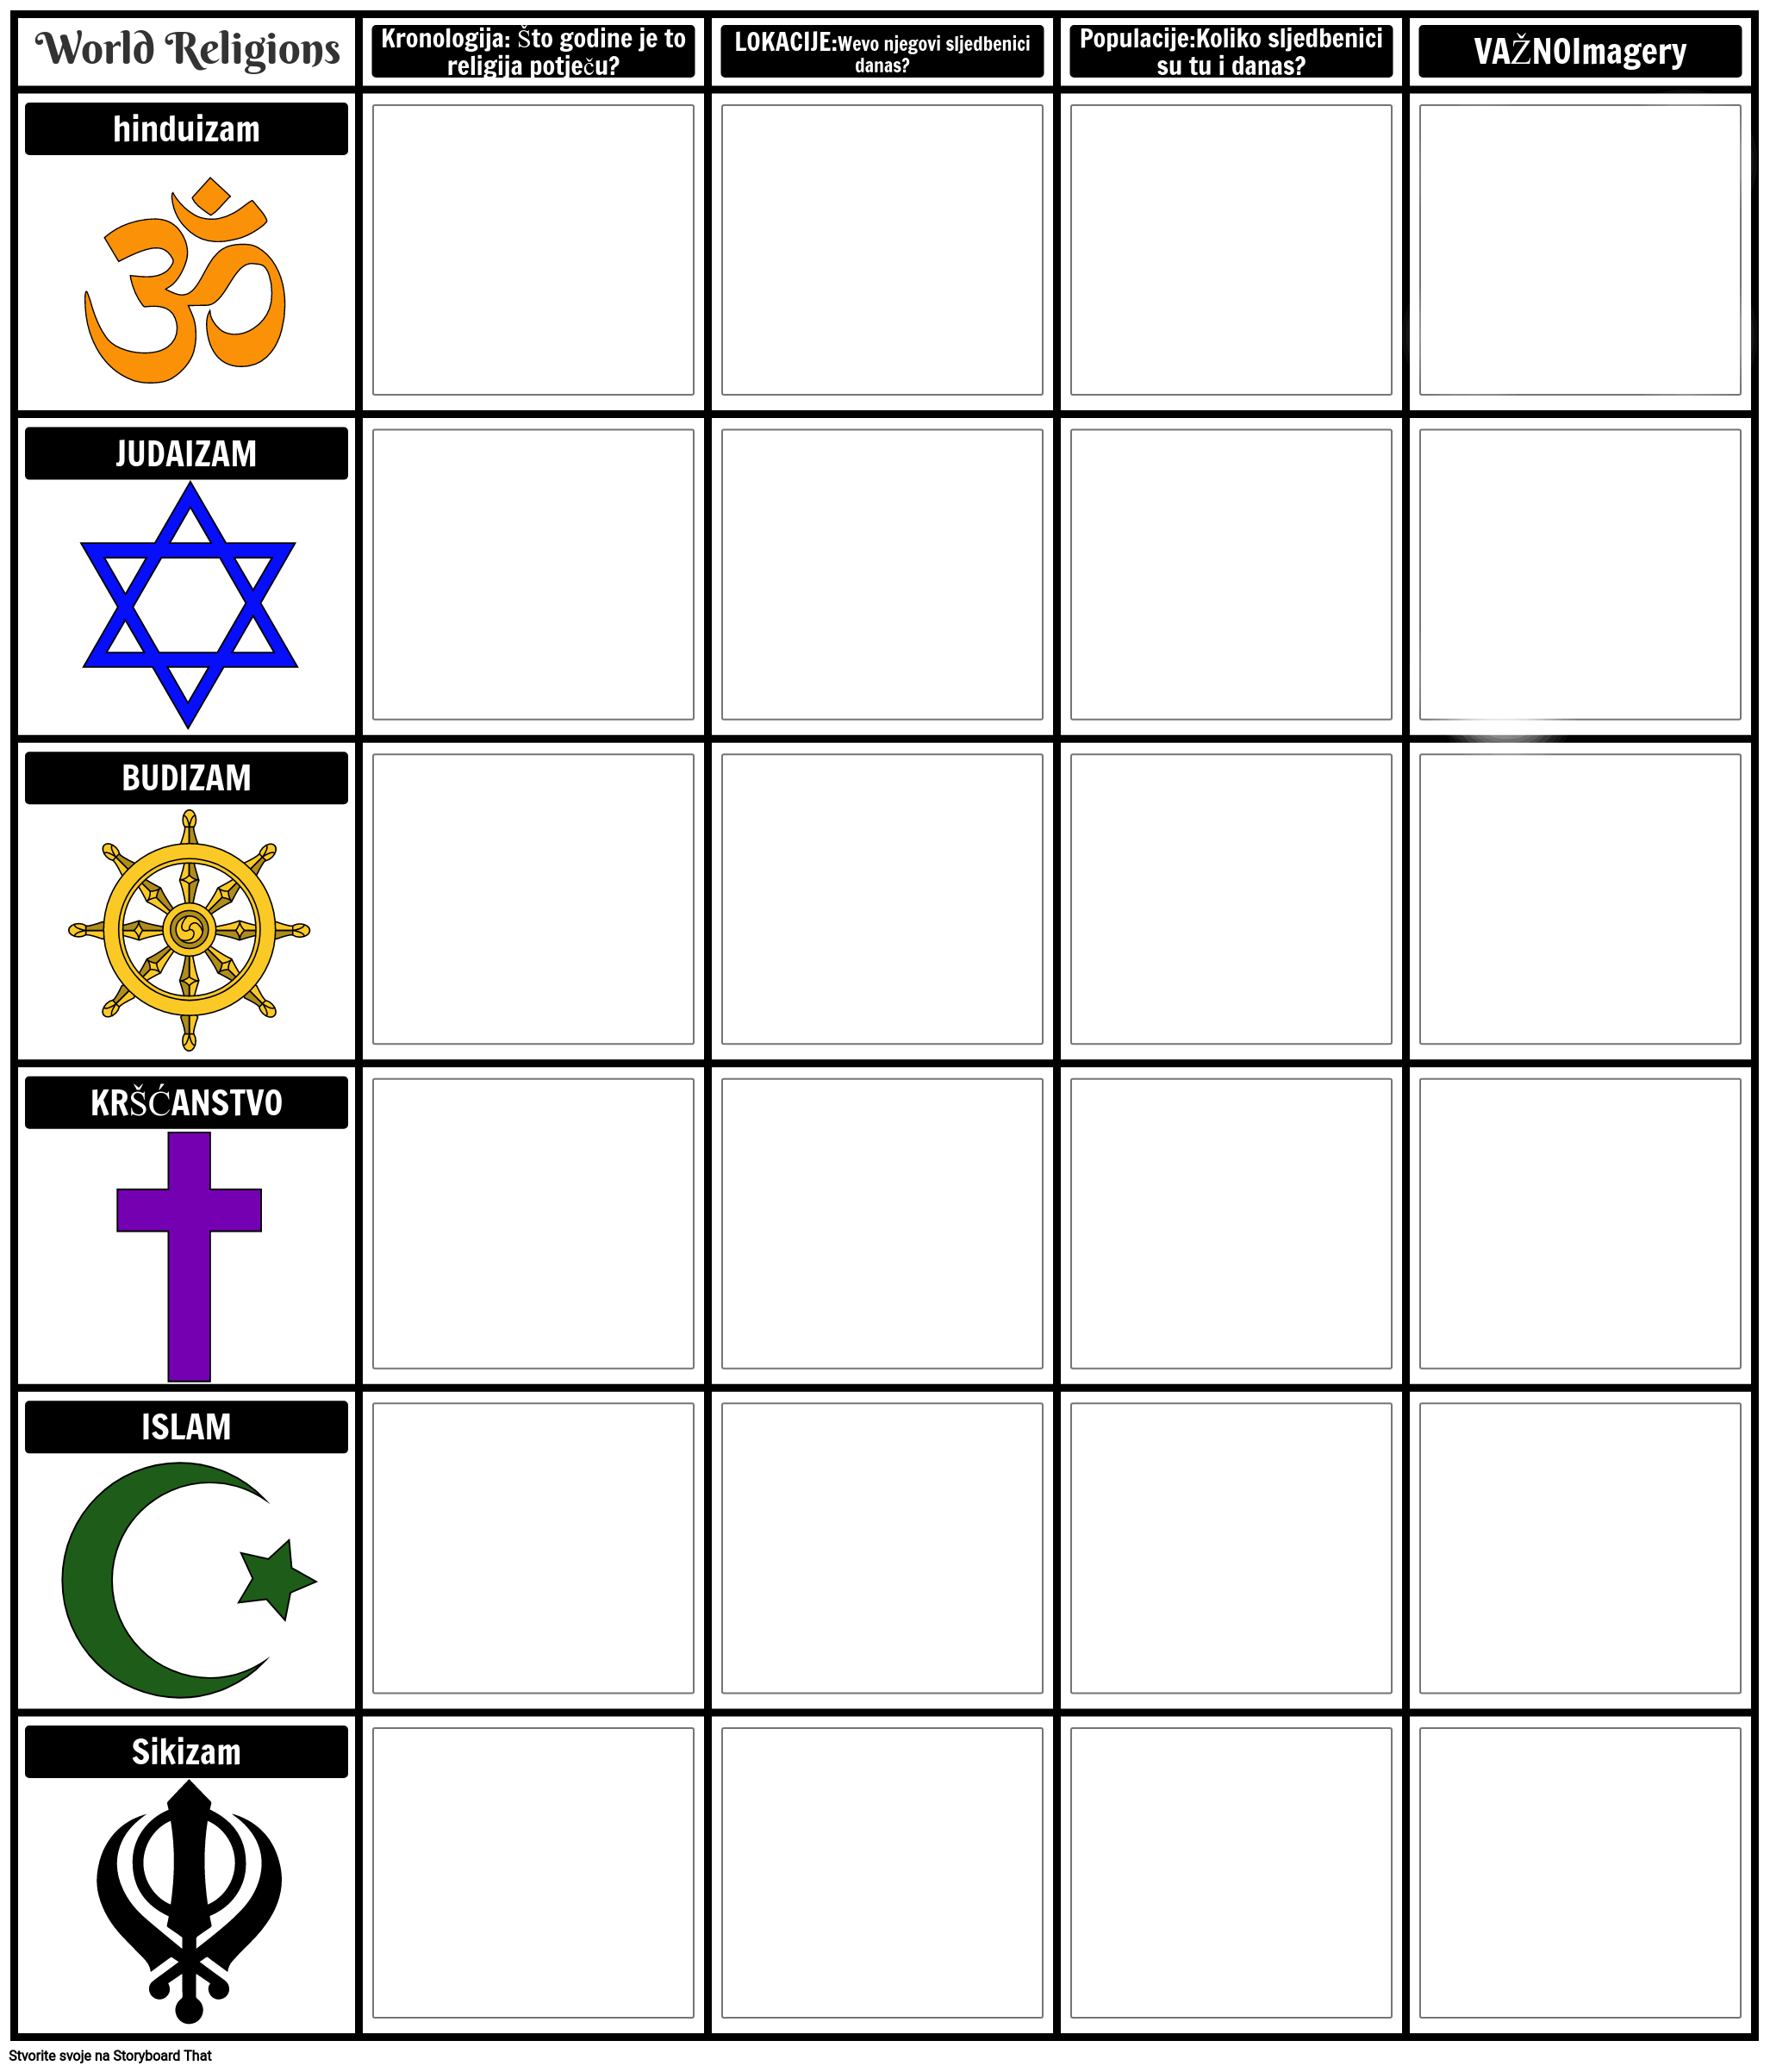 Predložak Grafikona za Usporedbu i Kontrast Svjetskih Religija